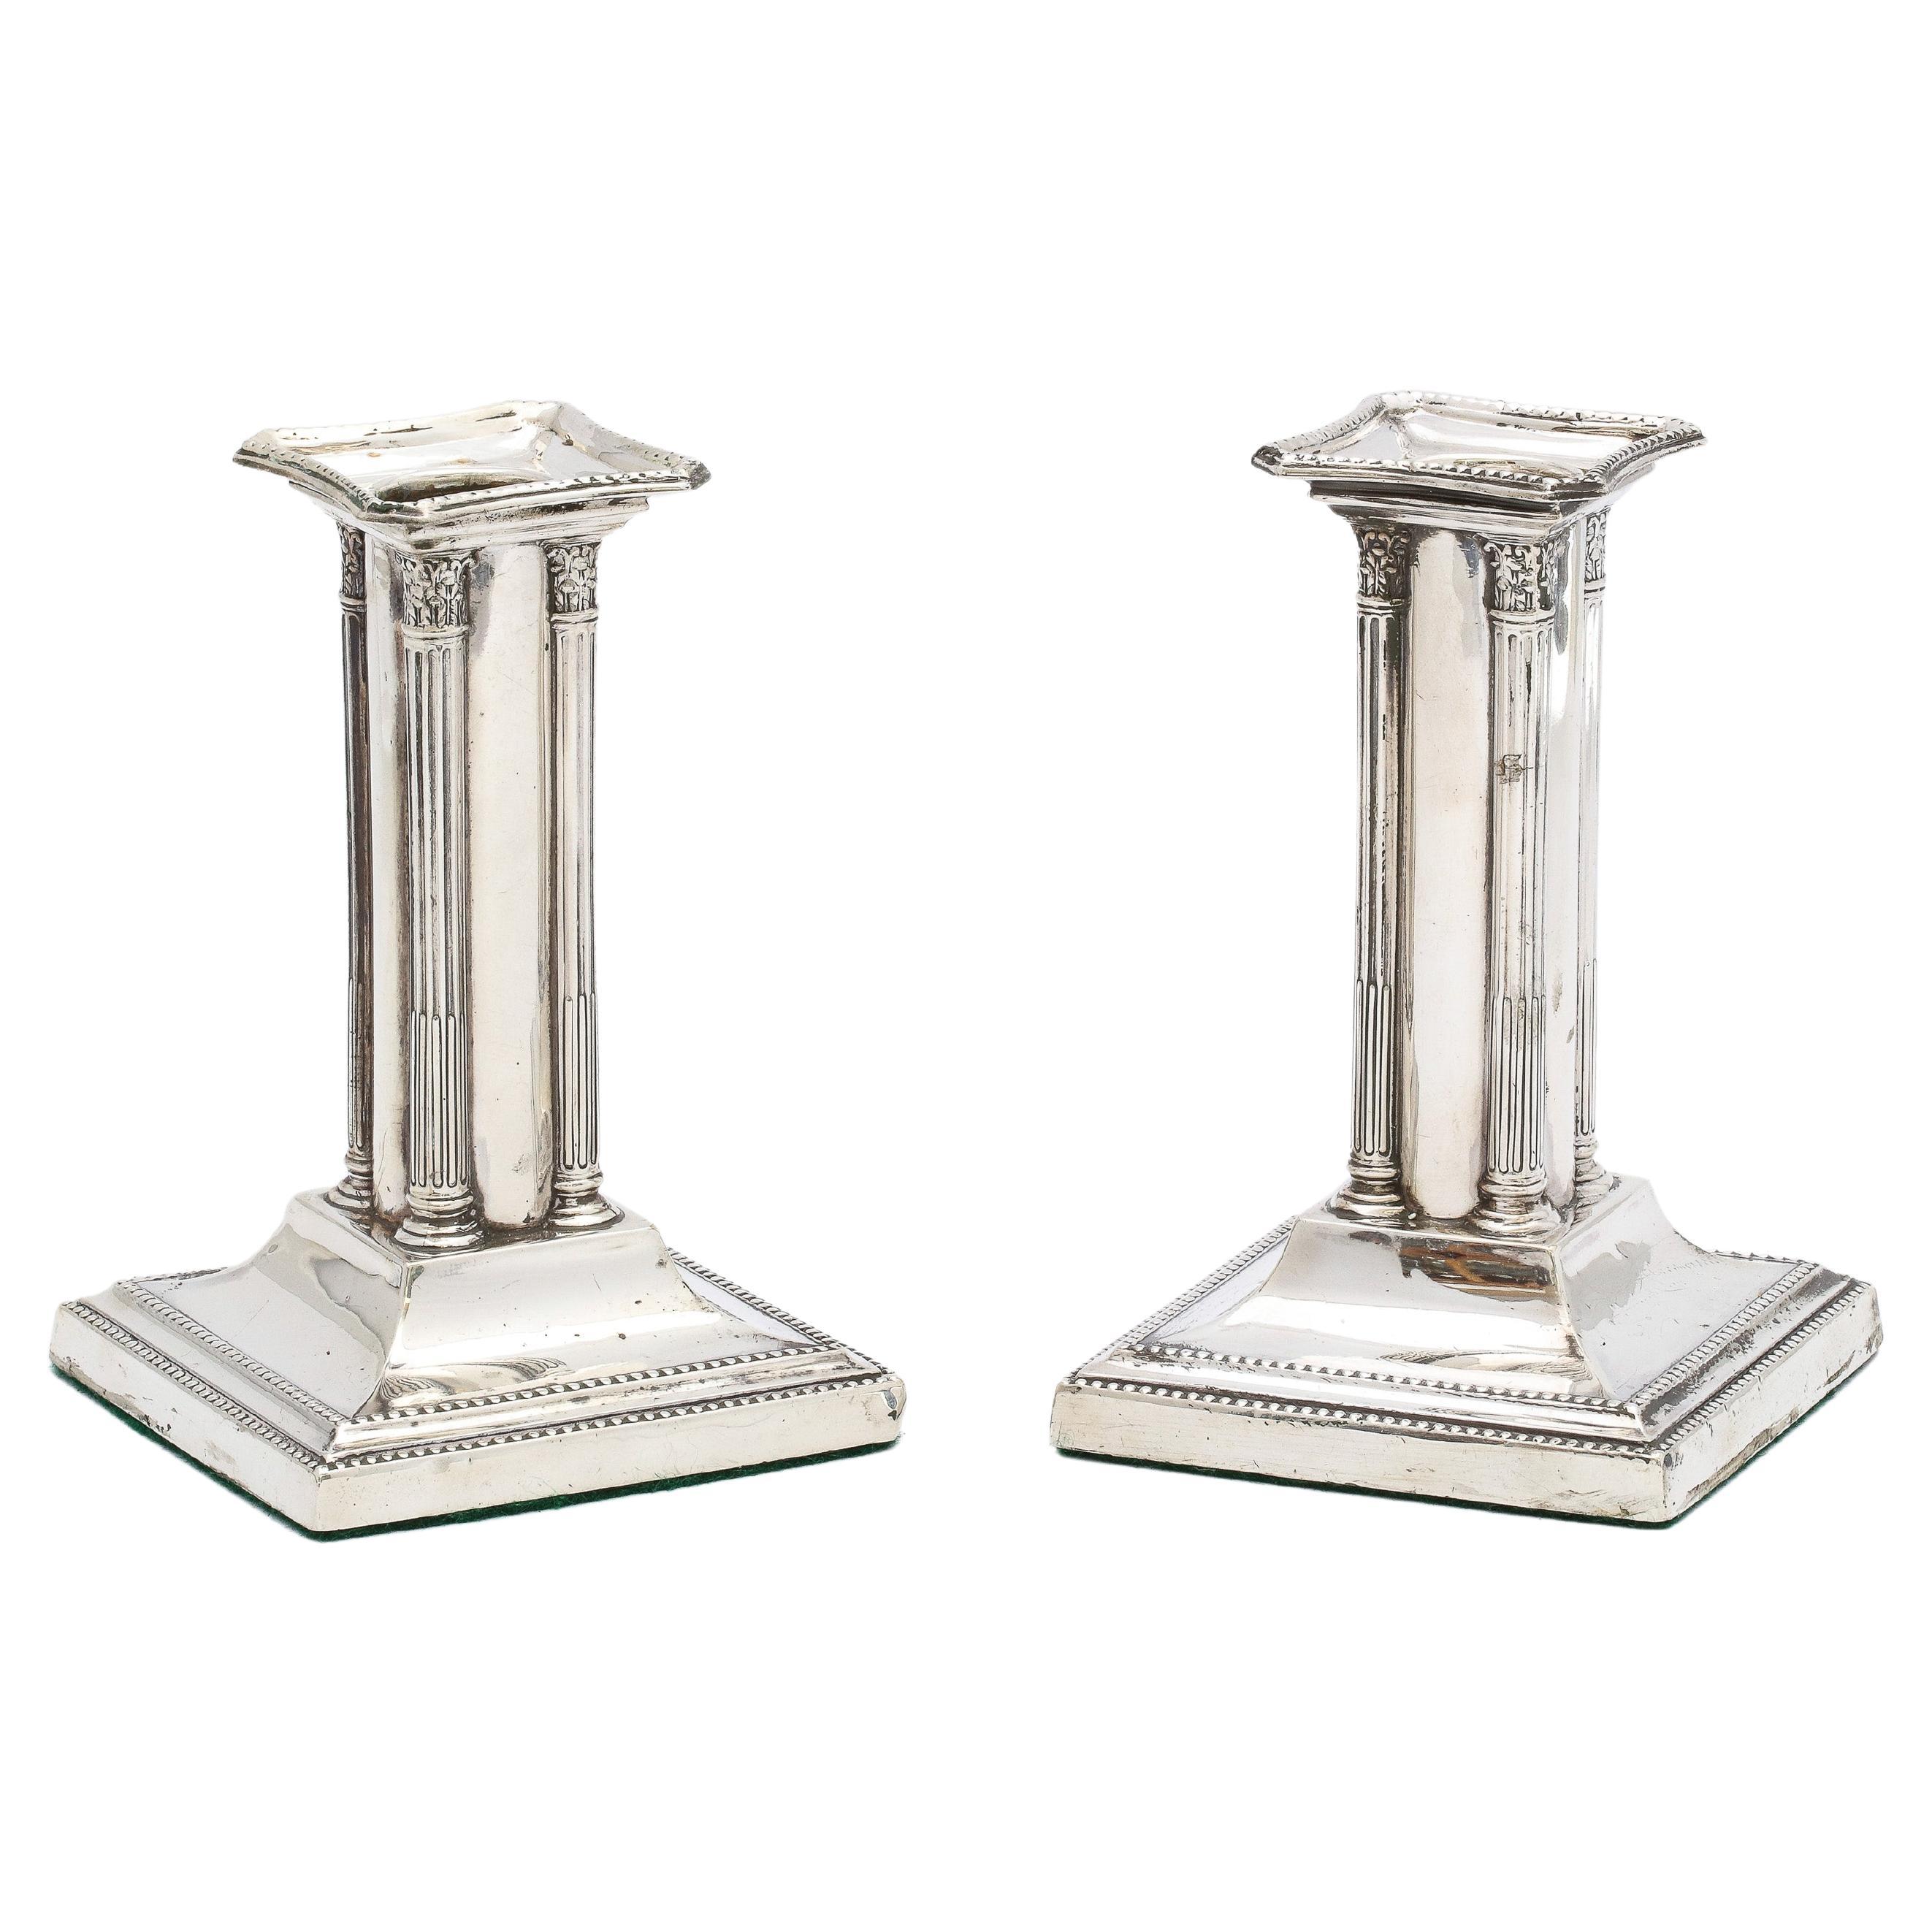 Paire inhabituelle de chandeliers en argent sterling de style néoclassique de la période édouardienne